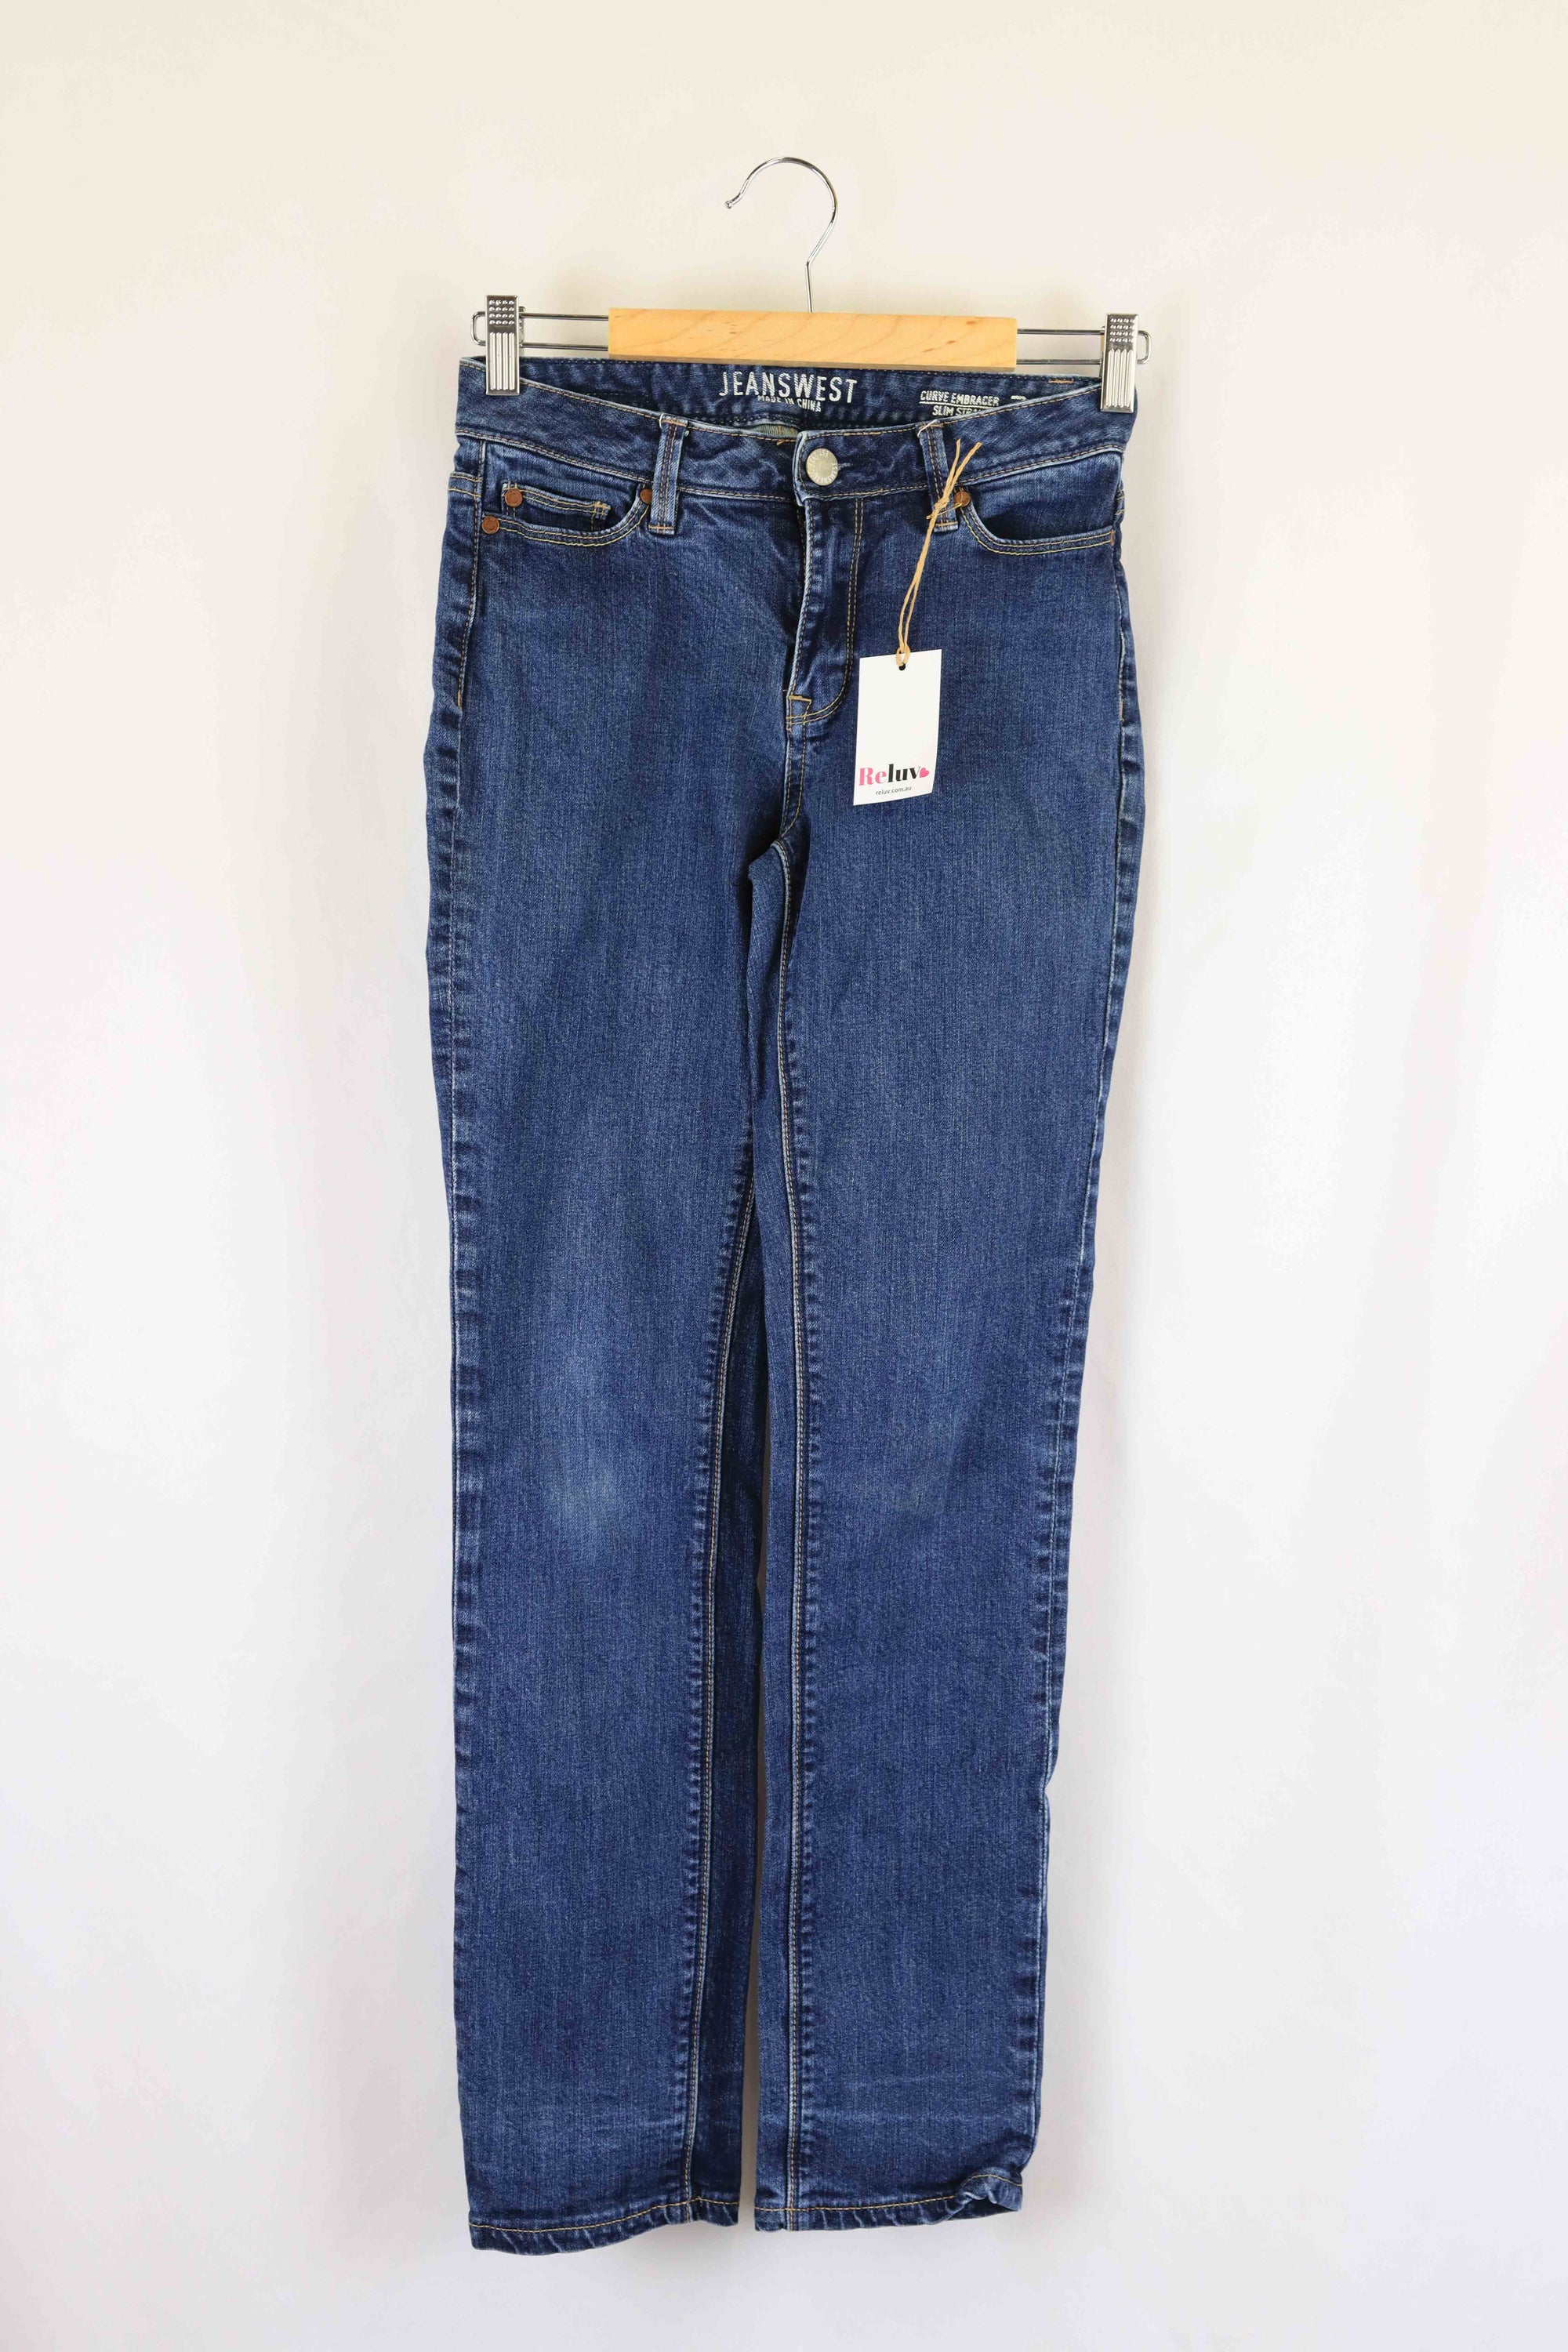 Uniqlo Peach 3/4 Jeans L - Reluv Clothing Australia